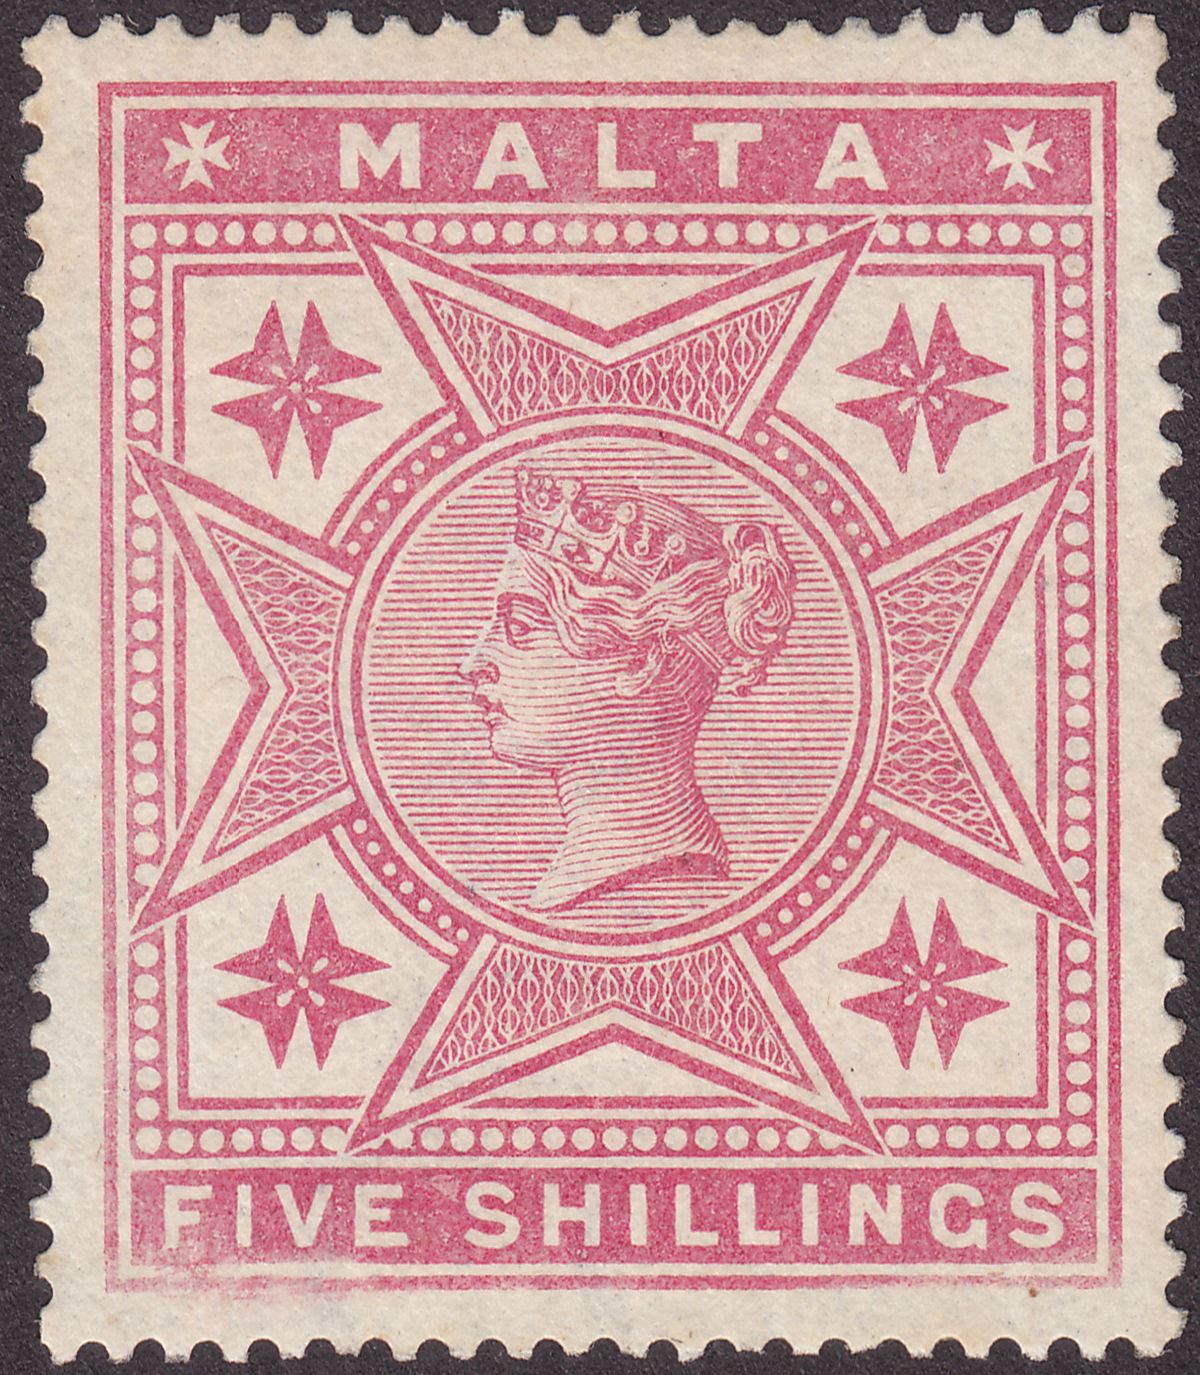 Malta 1886 Queen Victoria 5sh Rose Mint* SG30 cat £110 prob regummed.